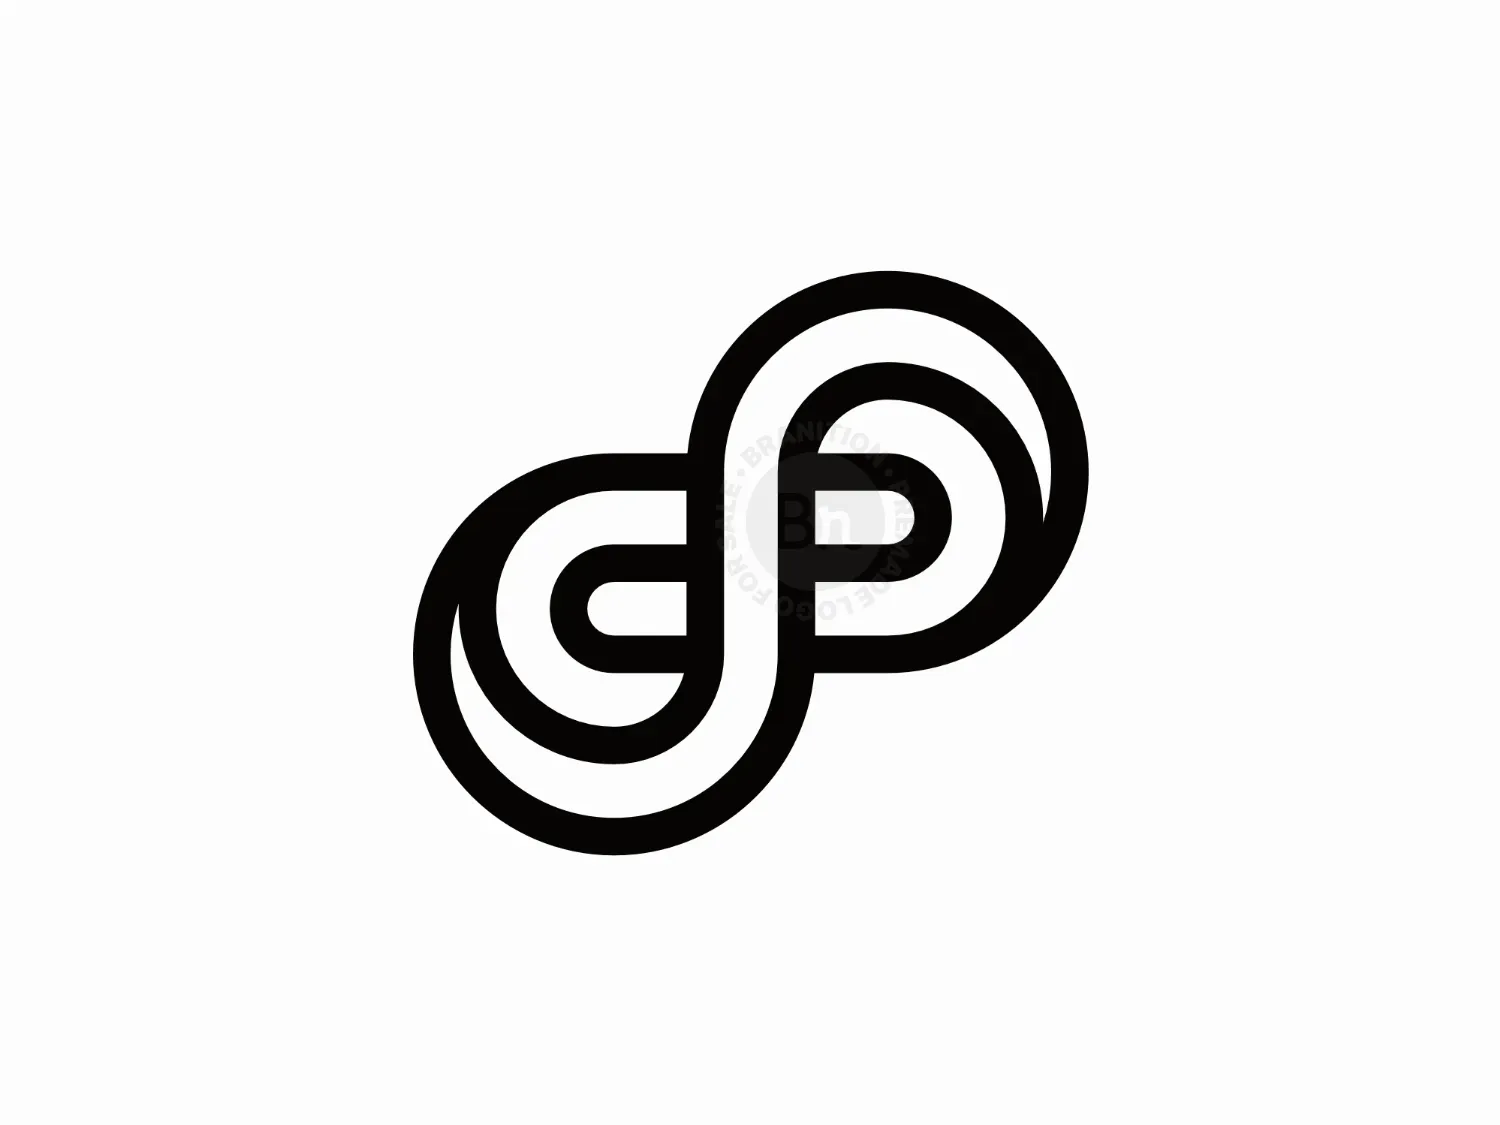 Pd logo Free Stock Vectors